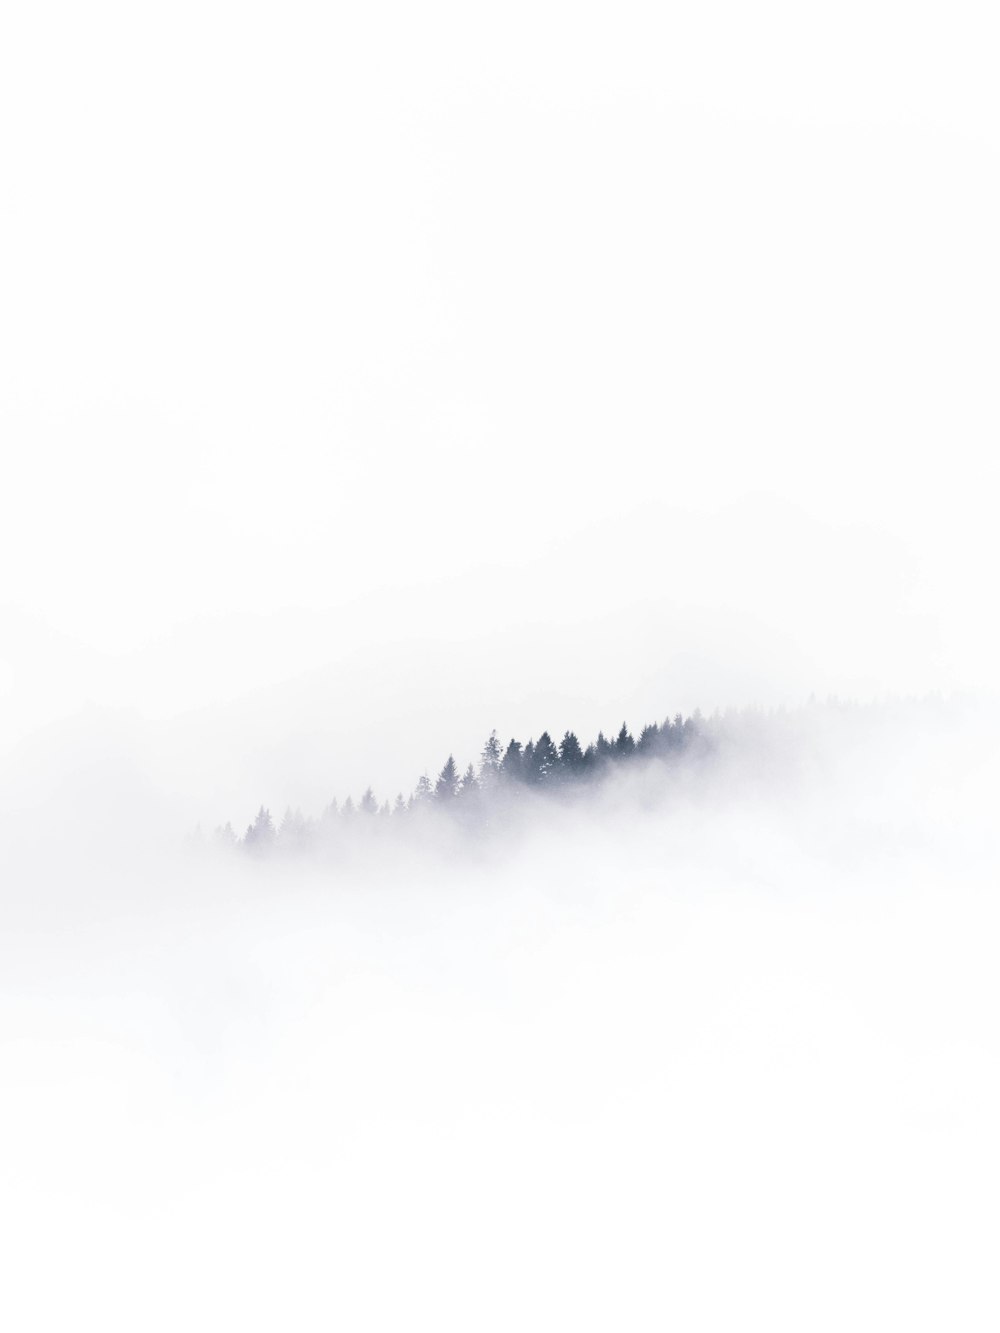 Un paesaggio nebbioso con alberi in lontananza